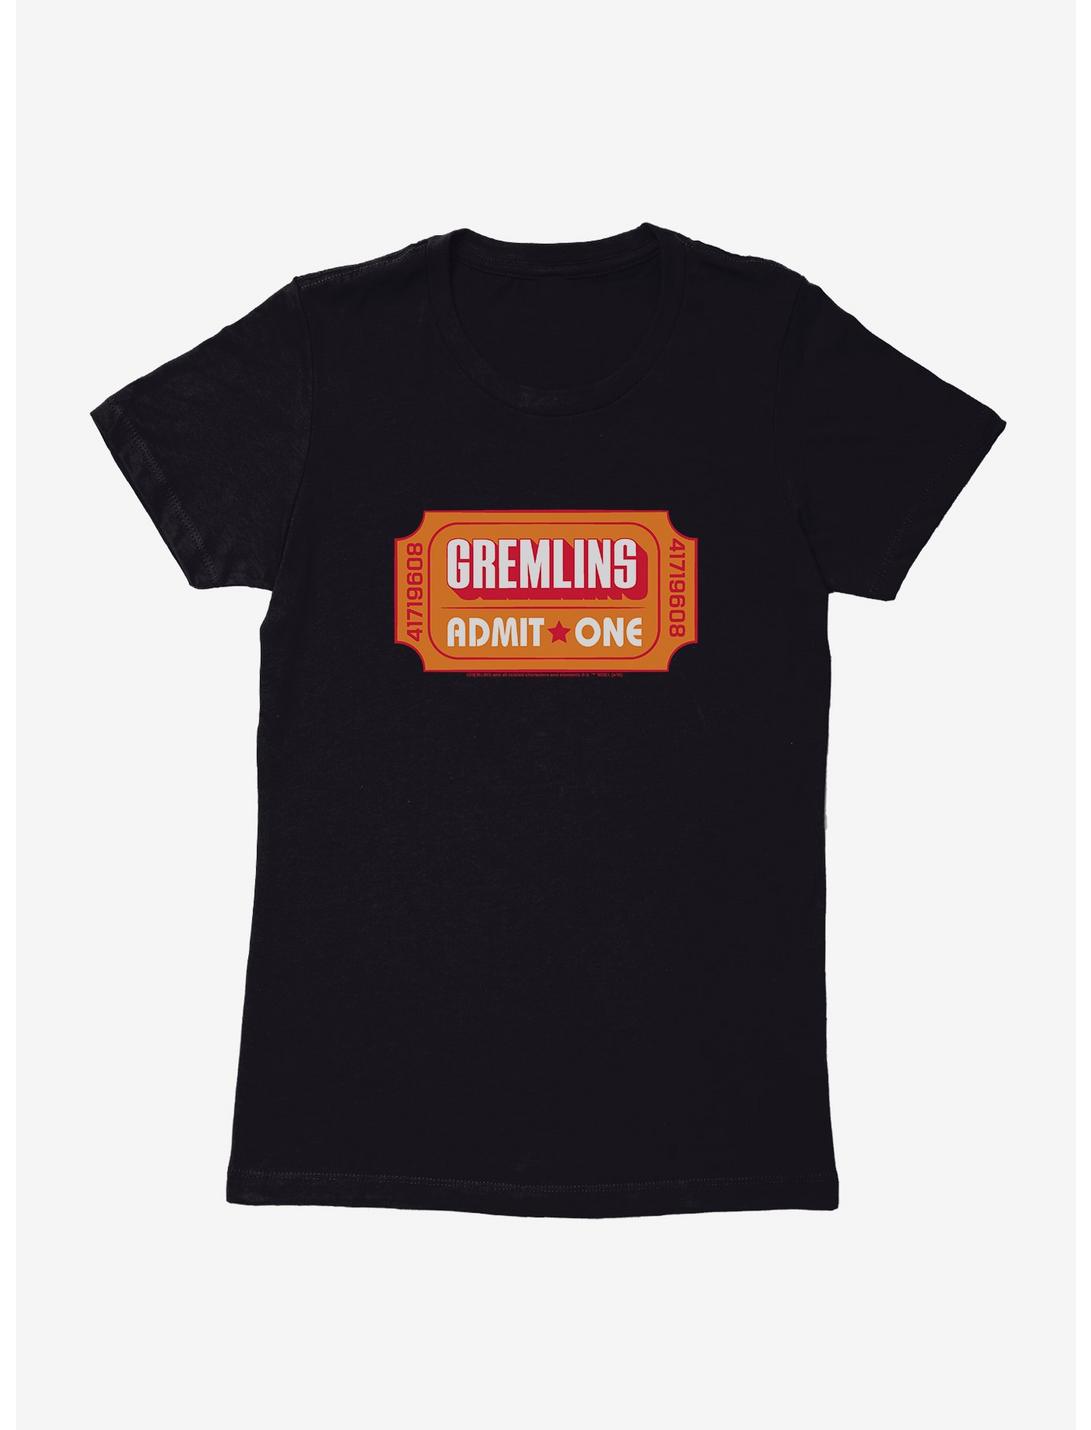 Gremlins Movie Ticket Admit One Womens T-Shirt, BLACK, hi-res